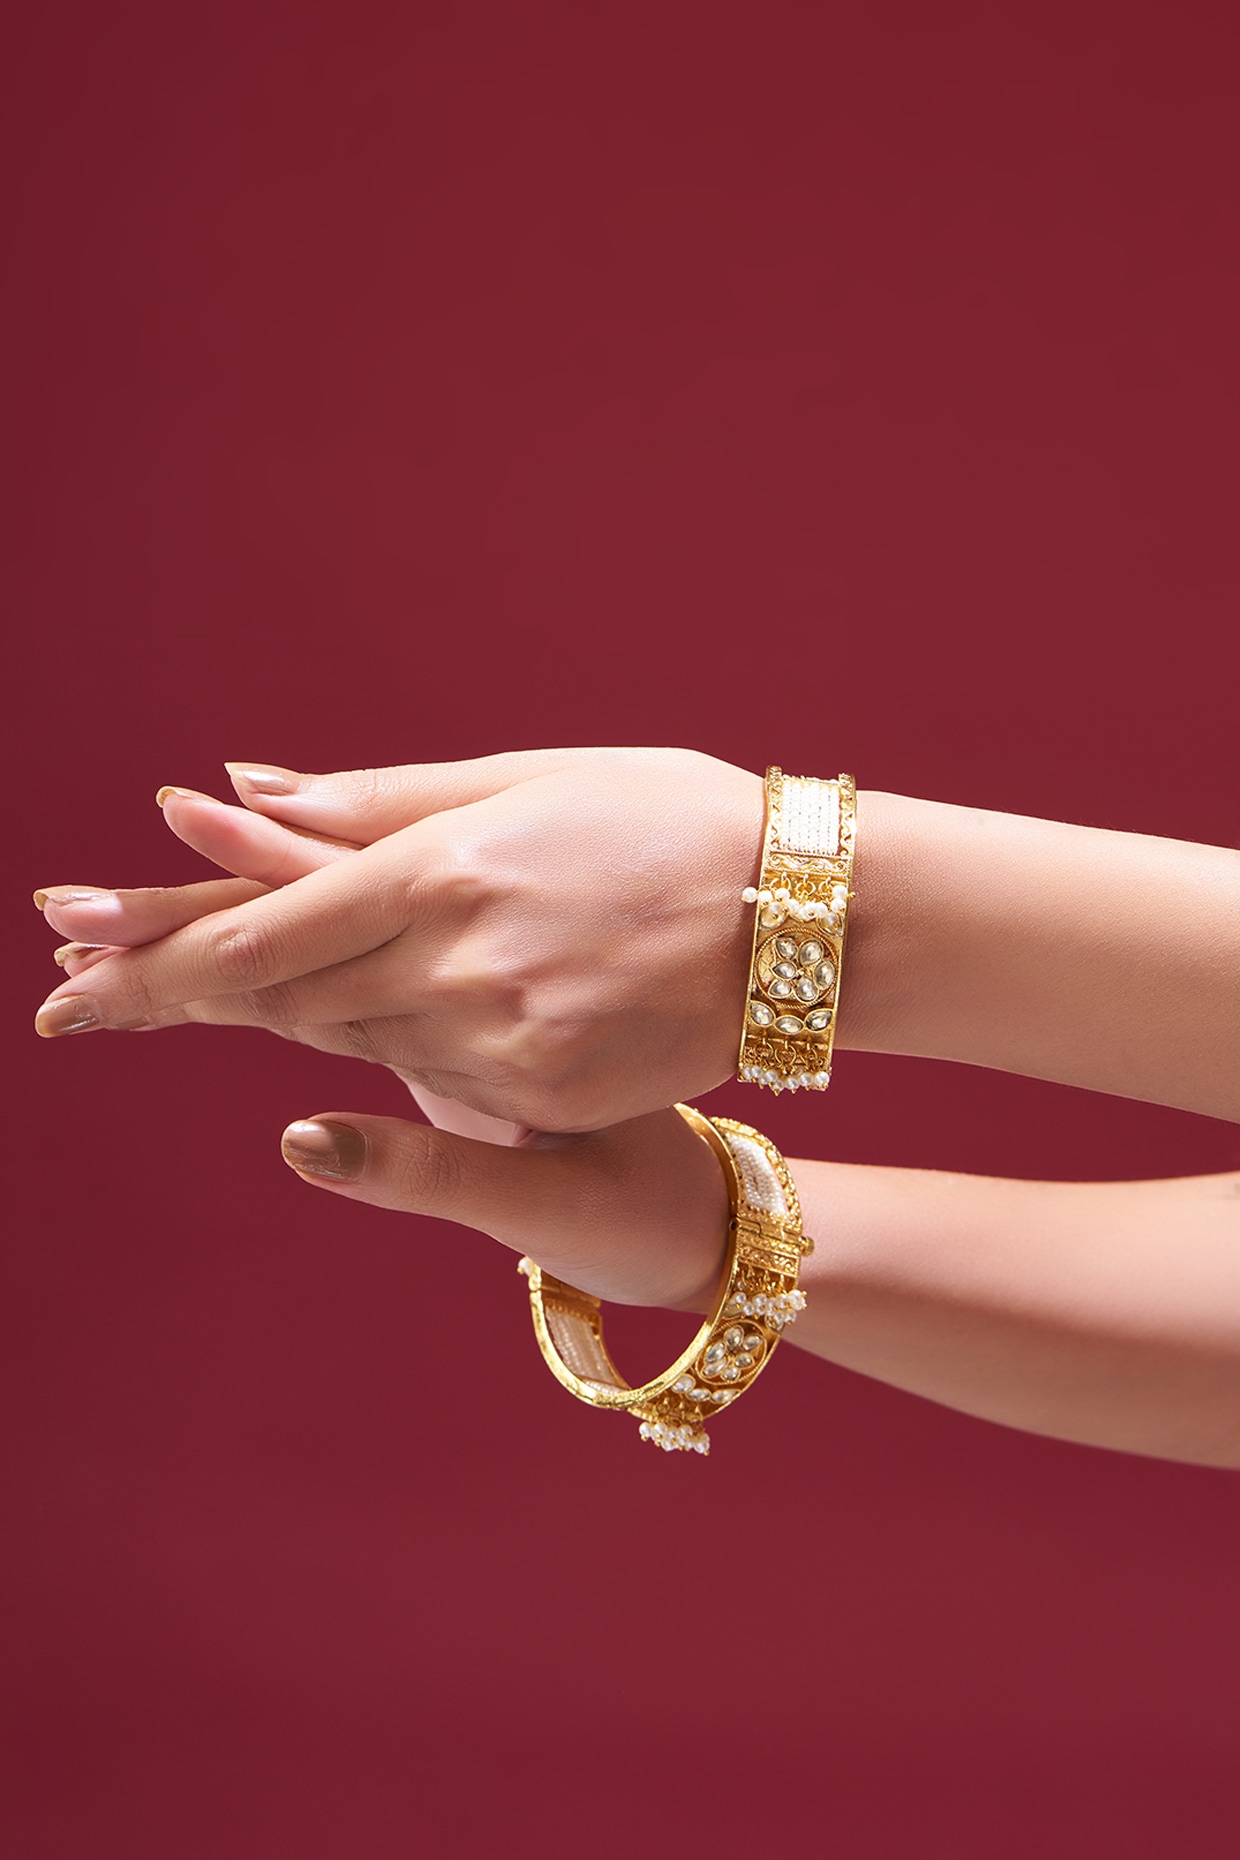 Bollywood Pakistani Indian Gold Tone Bridal Kundan Bangle Bracelet Kada  Jewelry | eBay